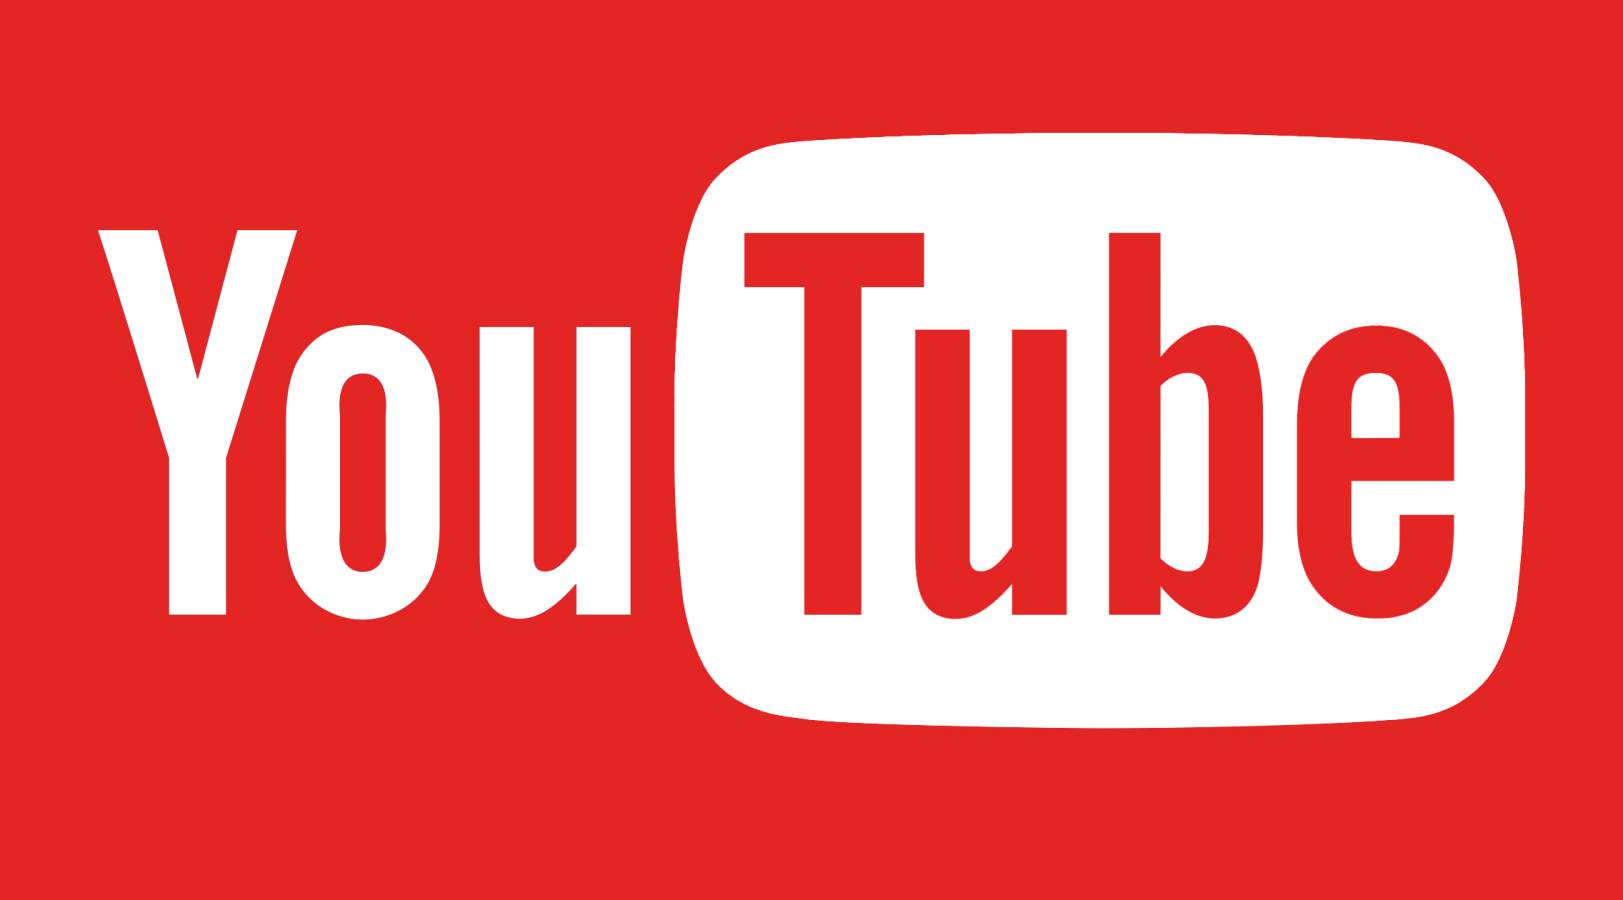 YouTube: Uusi päivitys julkaistu, mitä muutoksia on tulossa puhelimiin